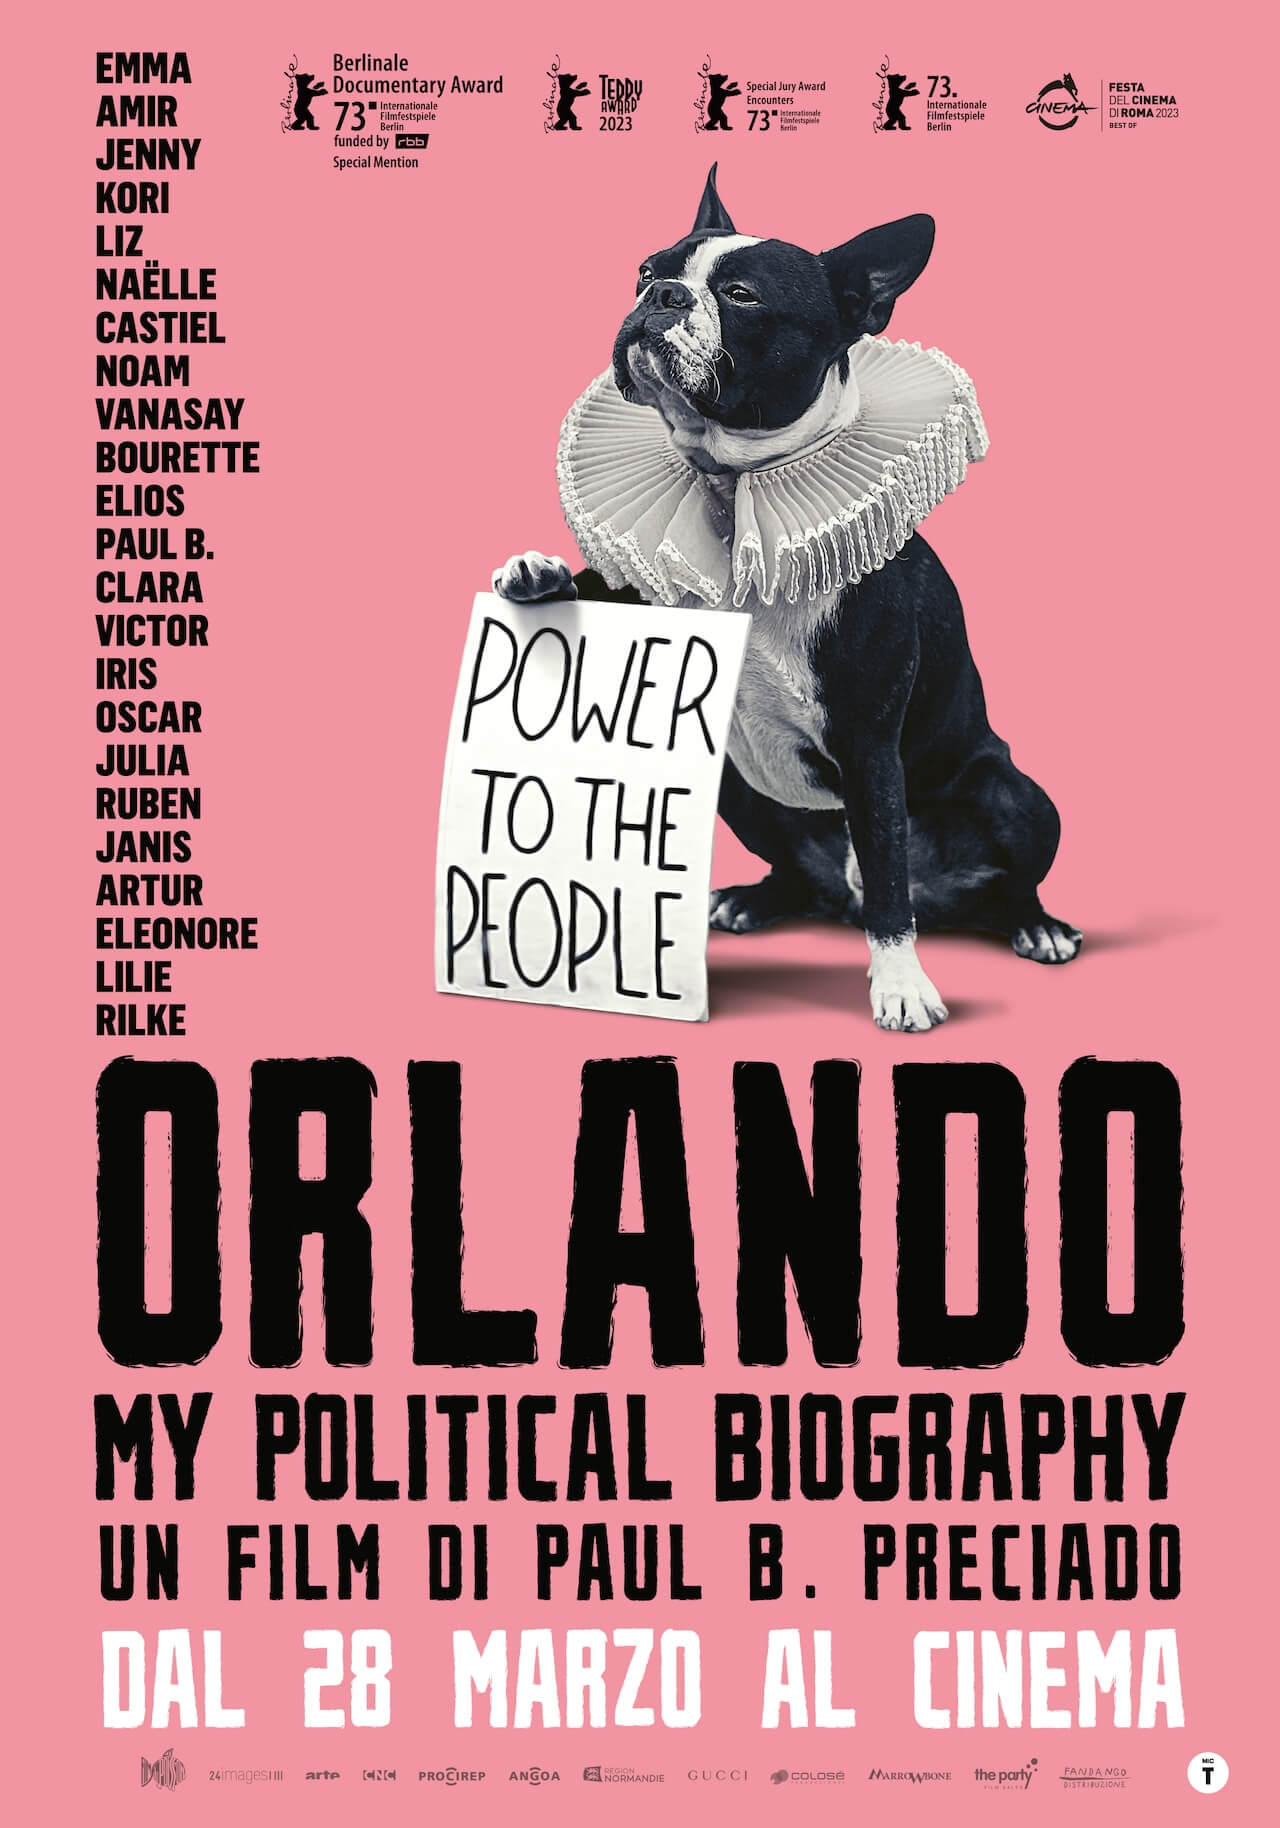 Lə infinitə Orlando che ci donano il caos non binario, utopico e liberatorio: intervista a Paul B. Preciado - ORLANDO poster data - Gay.it